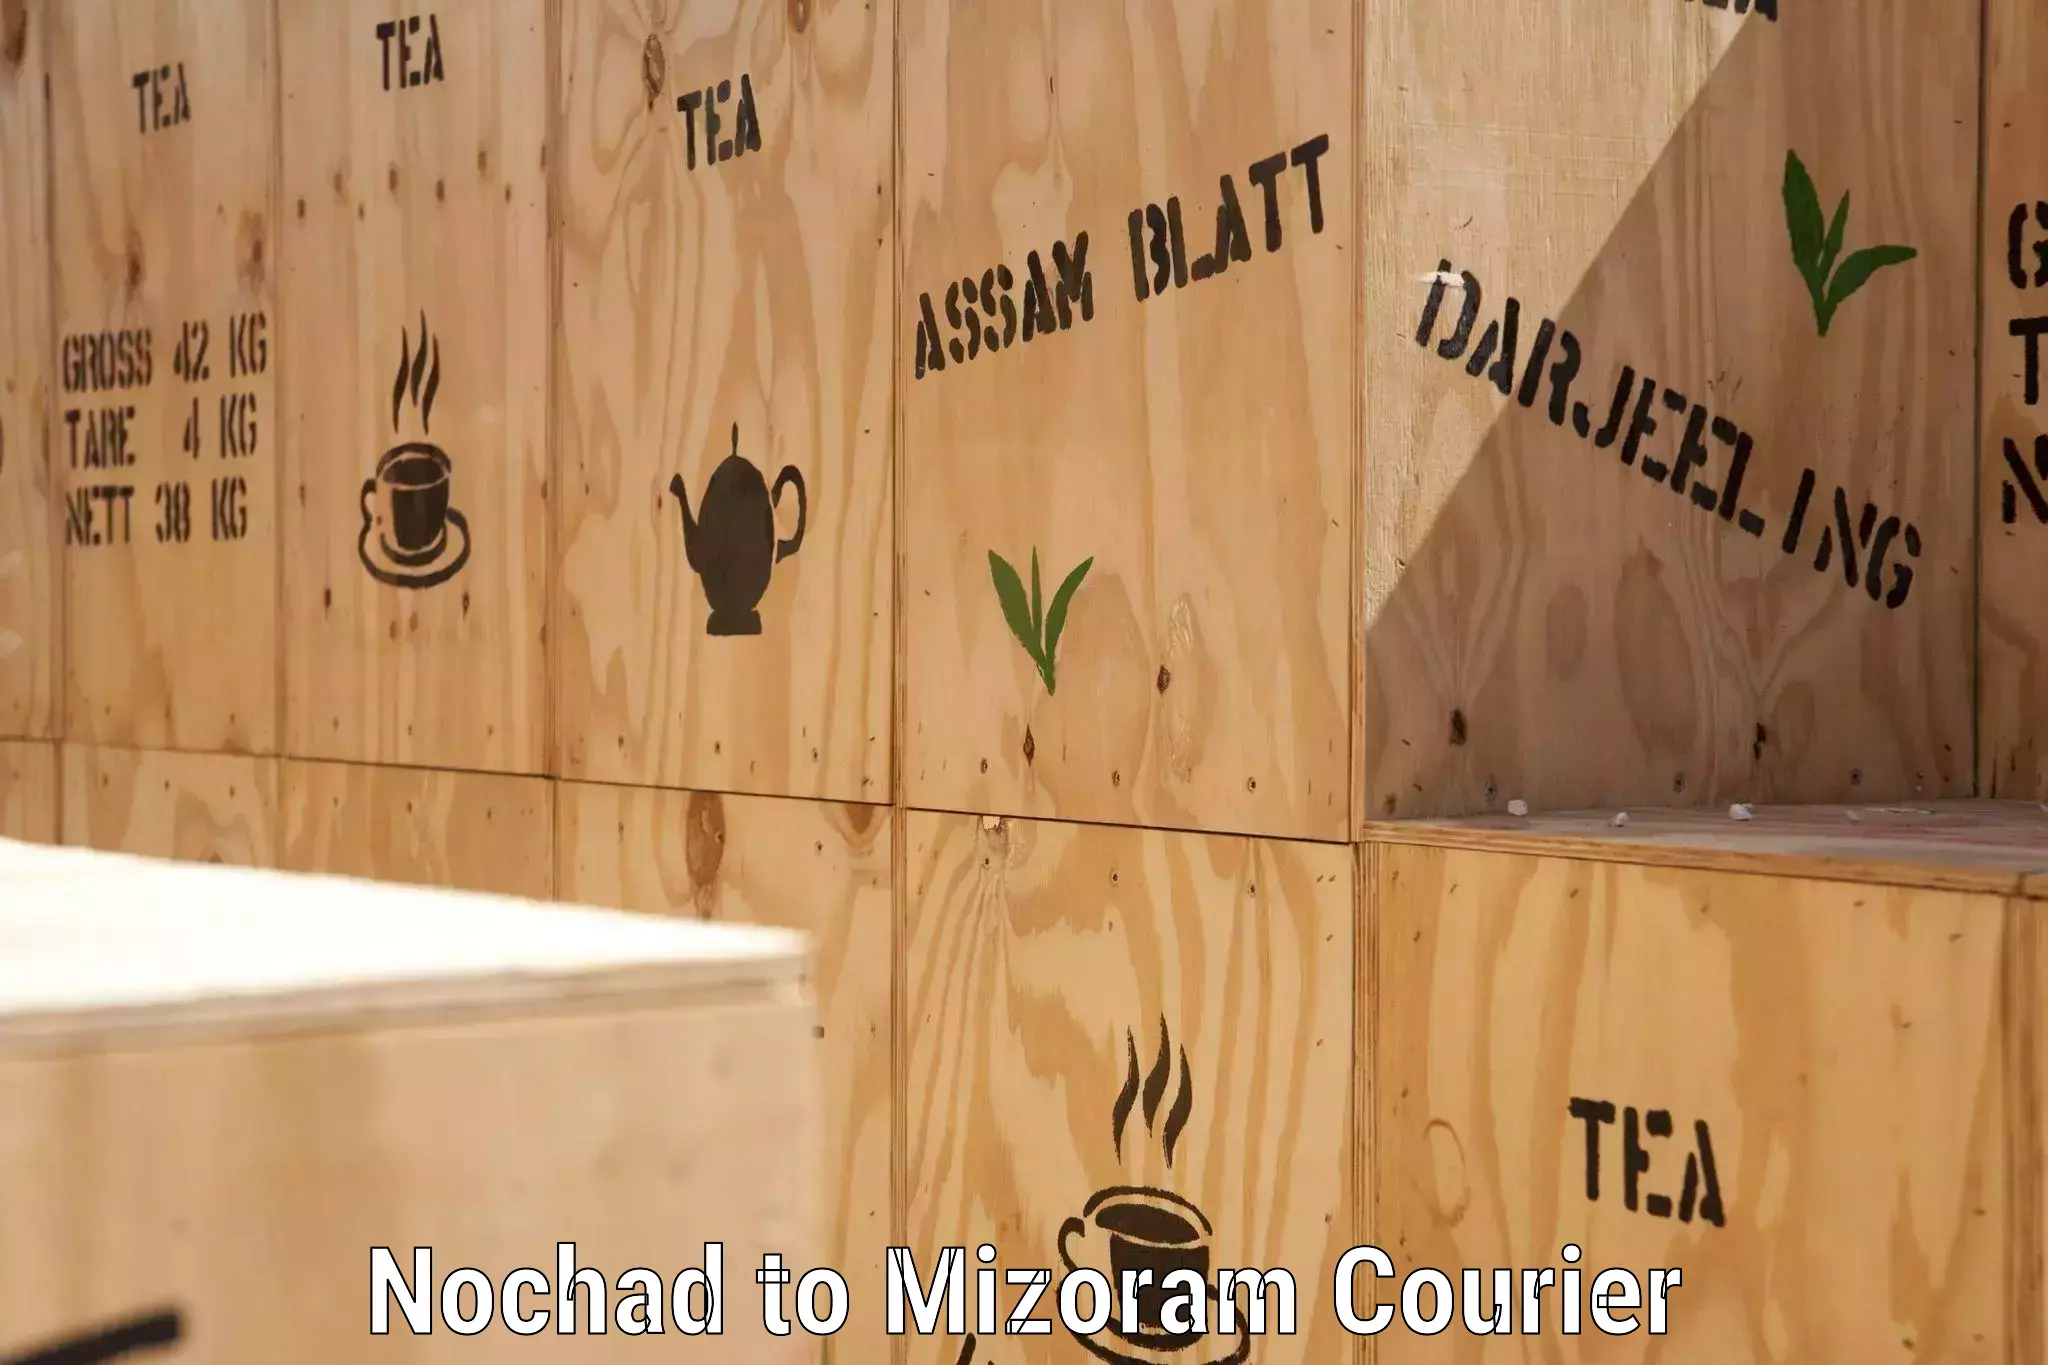 Cargo delivery service Nochad to Mizoram